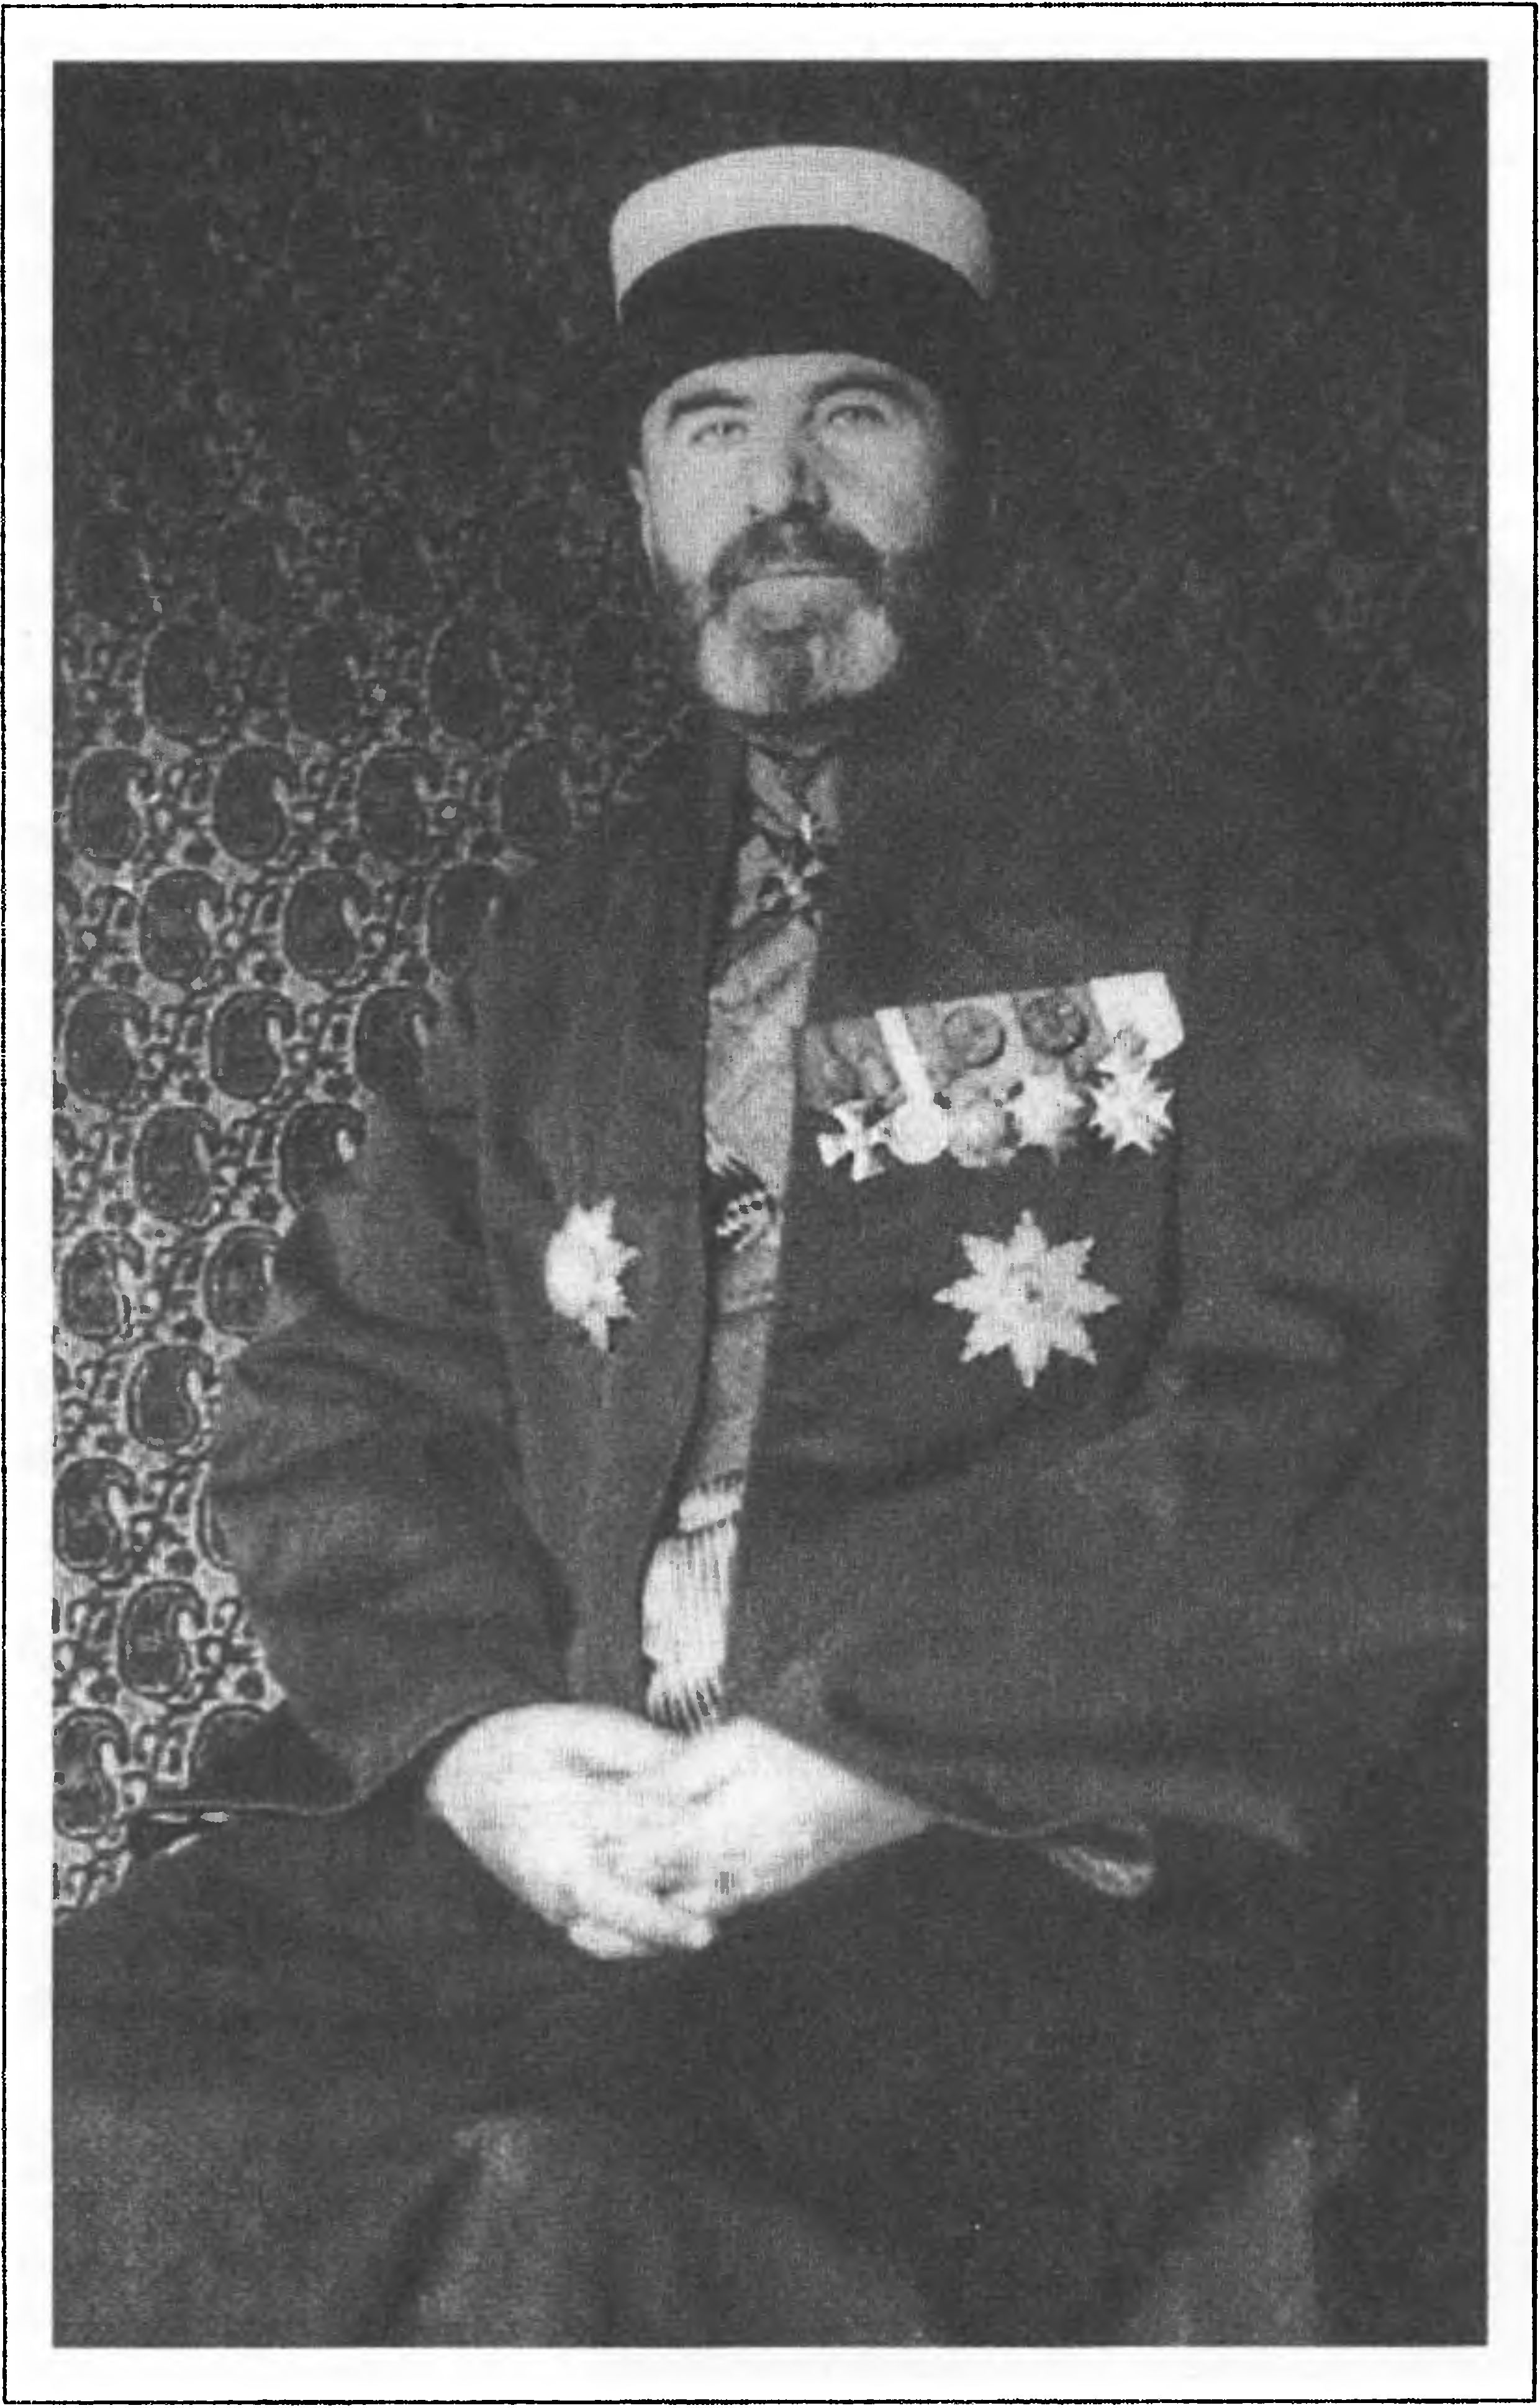 С.М. Шапшал (1873—1961) — востоковед, глава караимской общины Крыма, Литвы и Польши